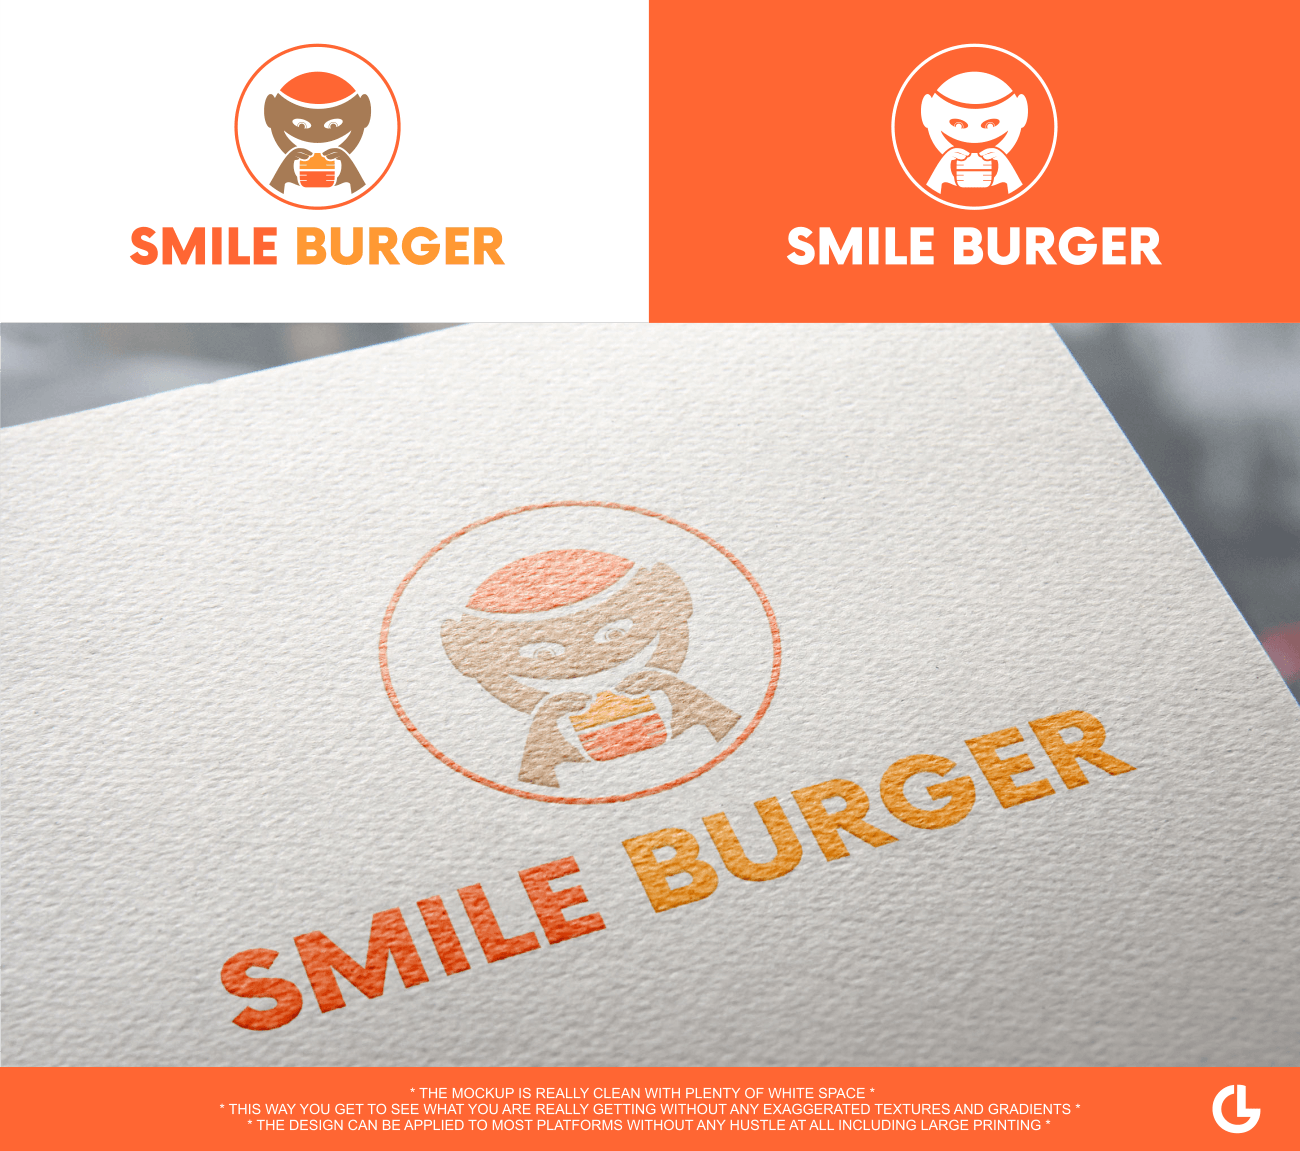 Most Popular Store Logo - Upmarket, Elegant, Food Store Logo Design for Smile Burger by L.G ...